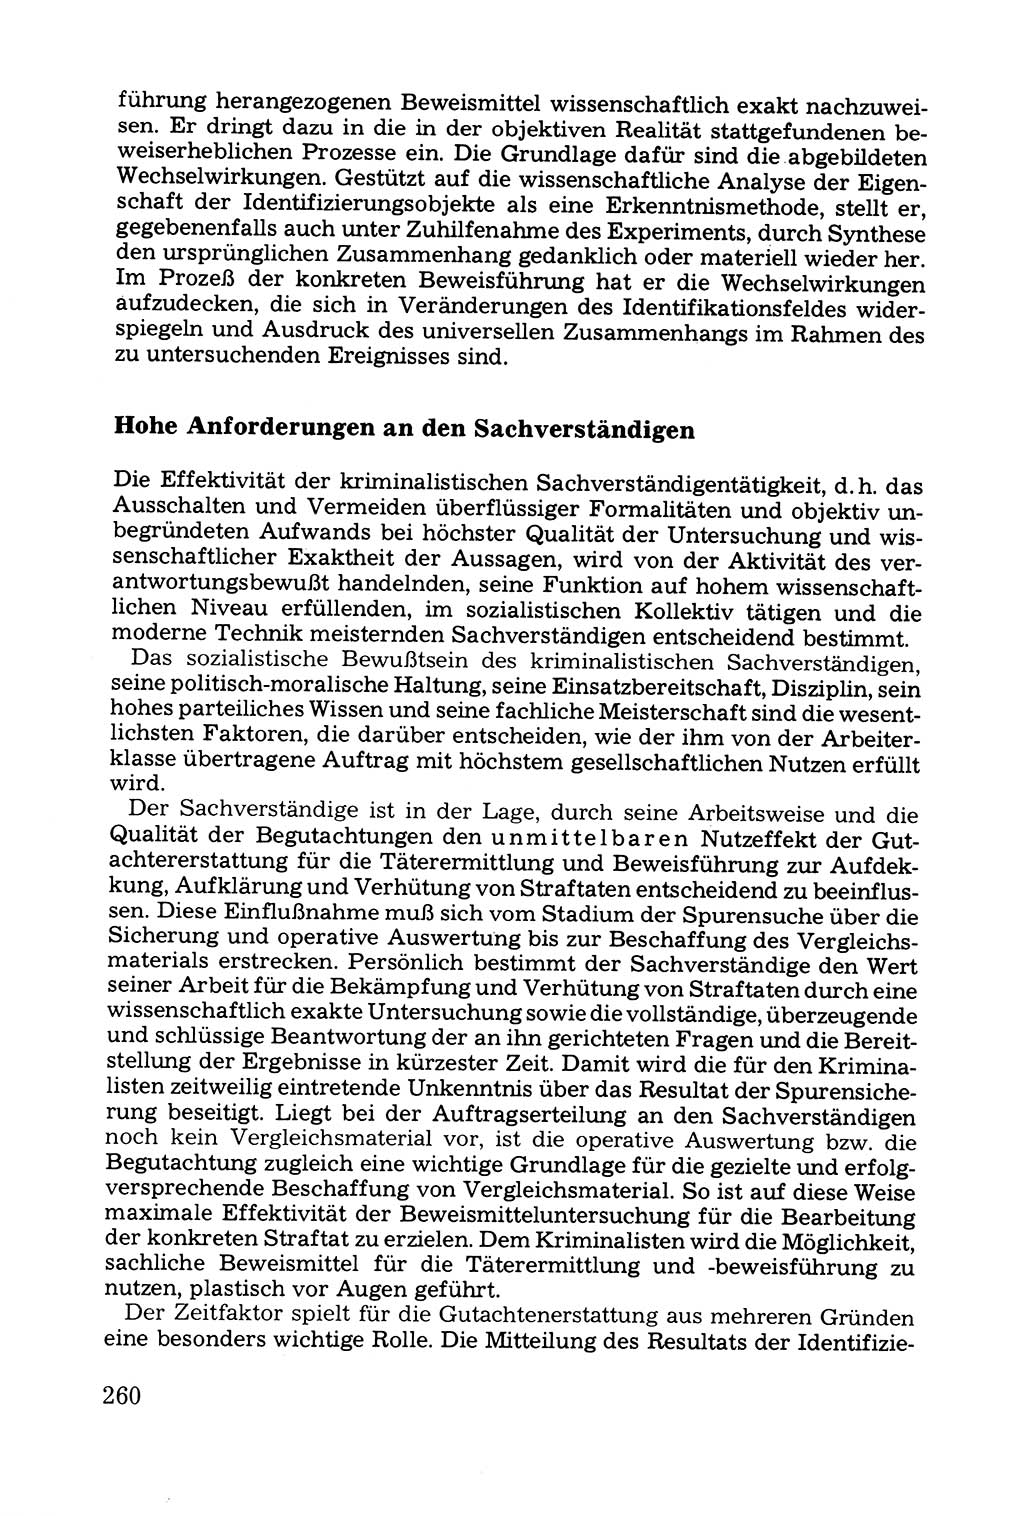 Grundfragen der Beweisführung im Ermittlungsverfahren [Deutsche Demokratische Republik (DDR)] 1980, Seite 260 (Bws.-Fhrg. EV DDR 1980, S. 260)